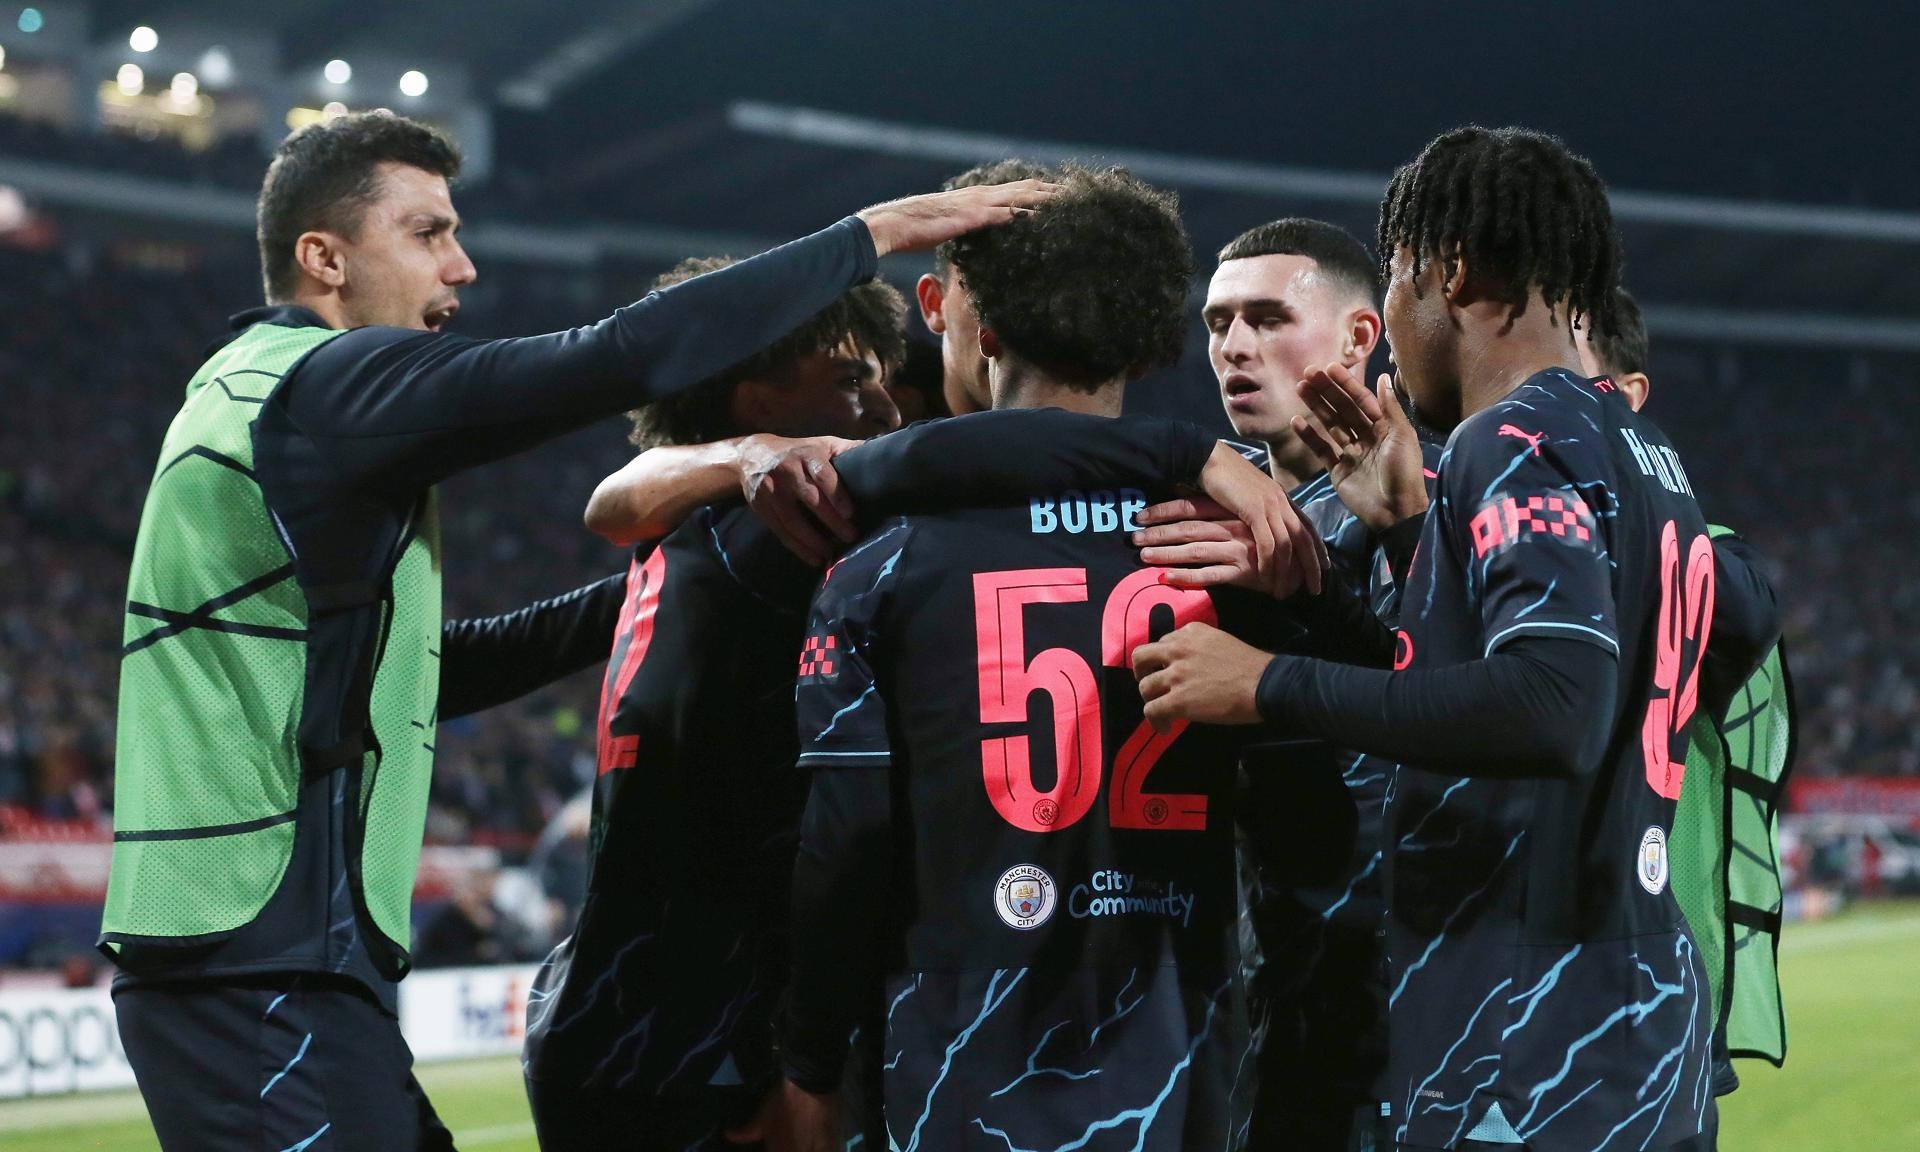 El Manchester City completó el pleno en la fase de grupos con un sufrido triunfo ante el Estrella Roja. Los canteranos 'citizen' sacaron el partido hacia adelante.